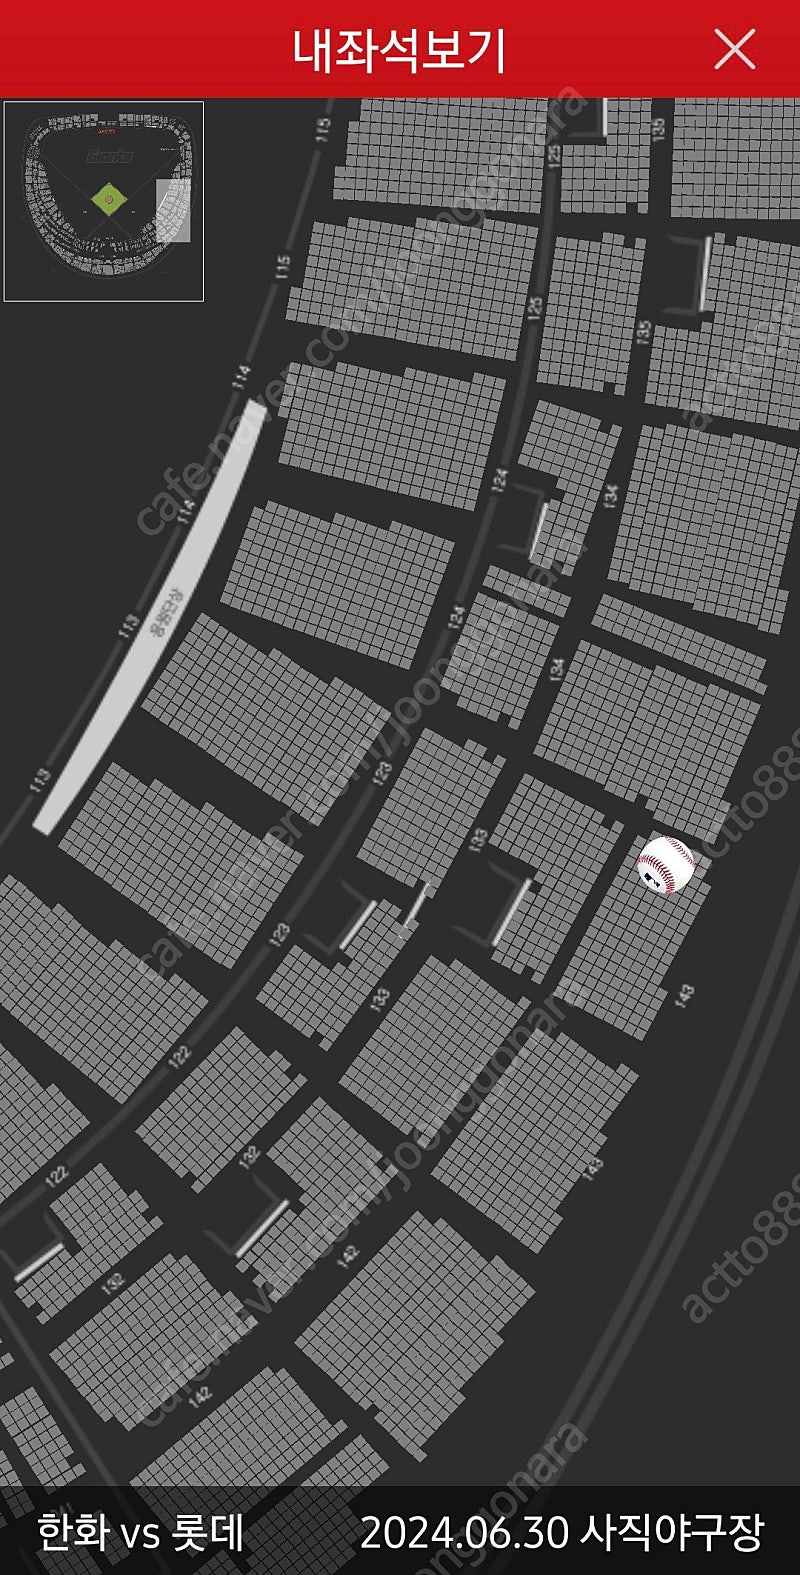 6월 30일(일) 롯데자이언츠 사직구장 1루 응원단상 앞 내야상단석 통로 2연석